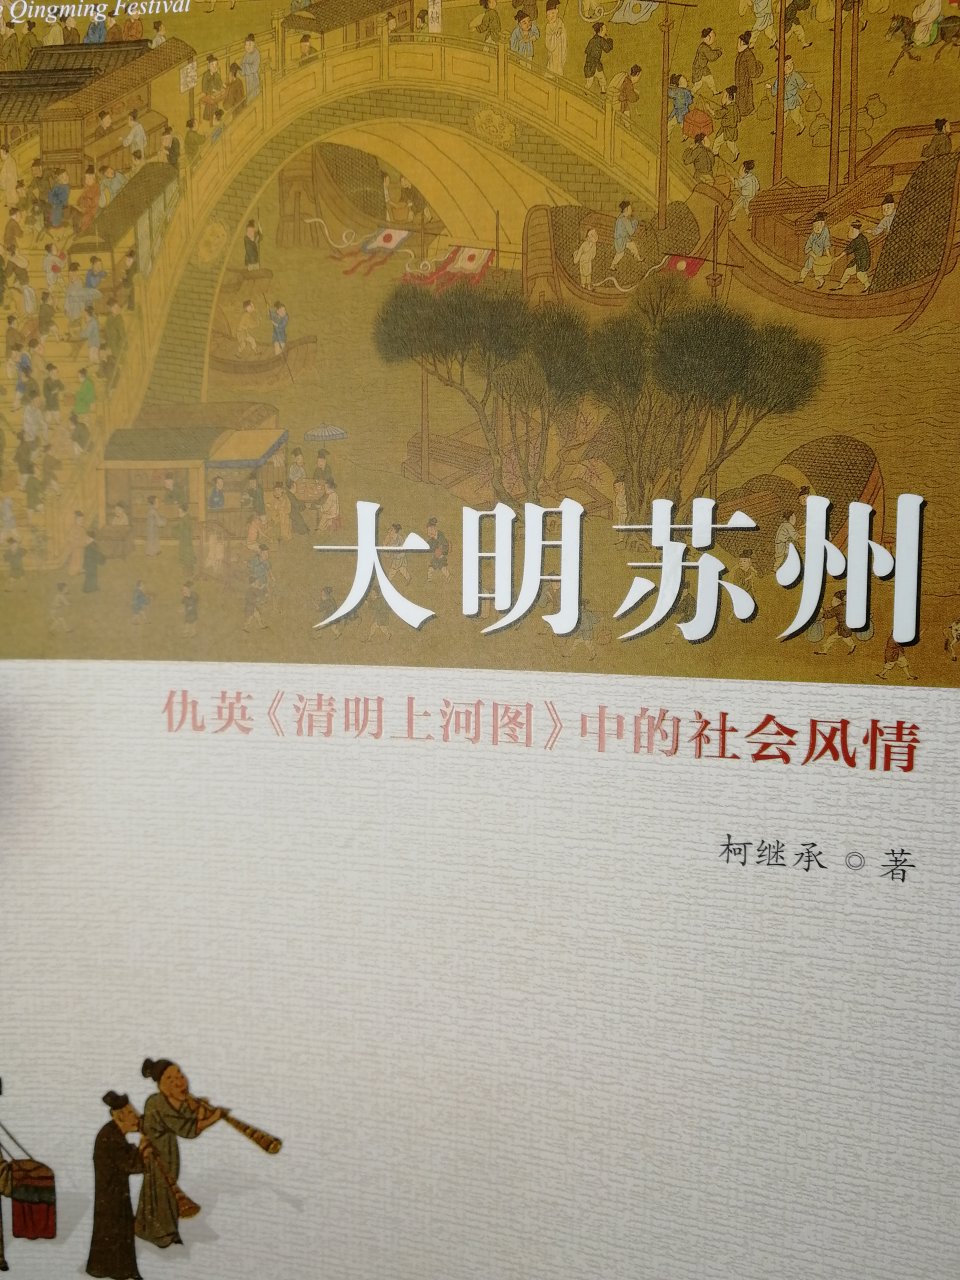 非常好，作者是老苏州人，热爱本地吴文化，这本书对仇英的《清明上河图》解读十分细致。